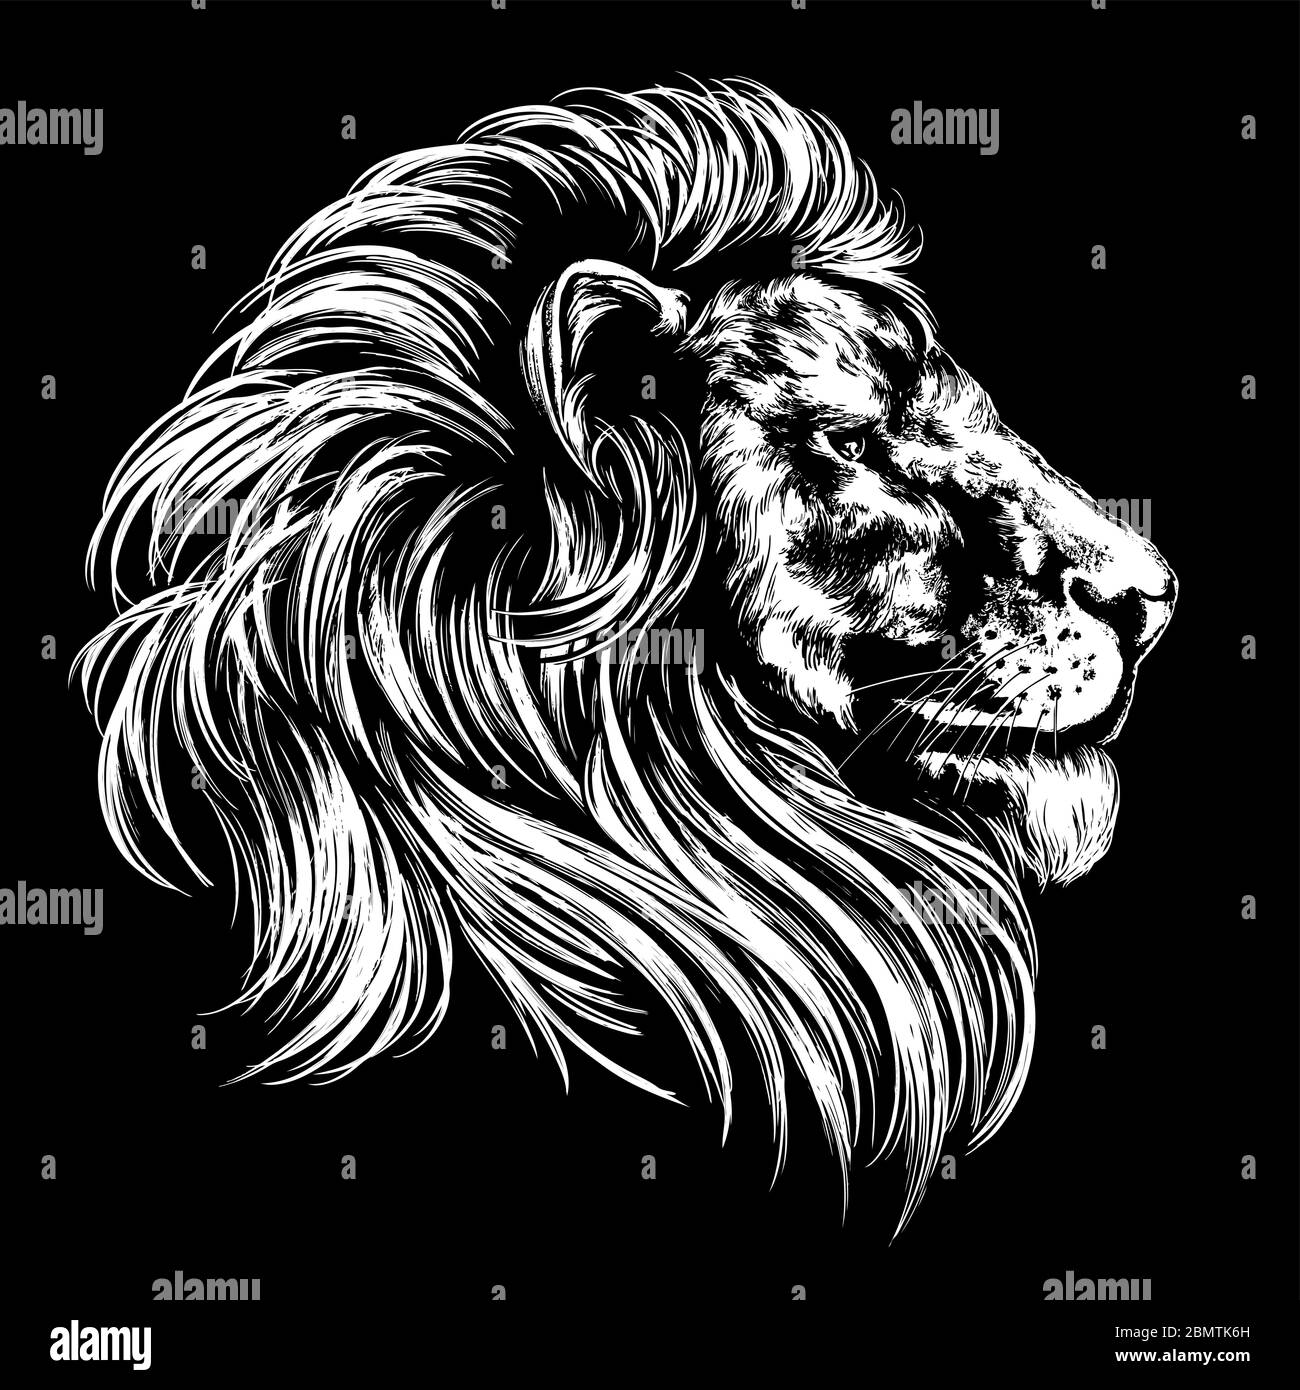 león animal, rey de bestias, dibujo de vector dibujado a mano ilustración croquis realista. Ilustración del Vector